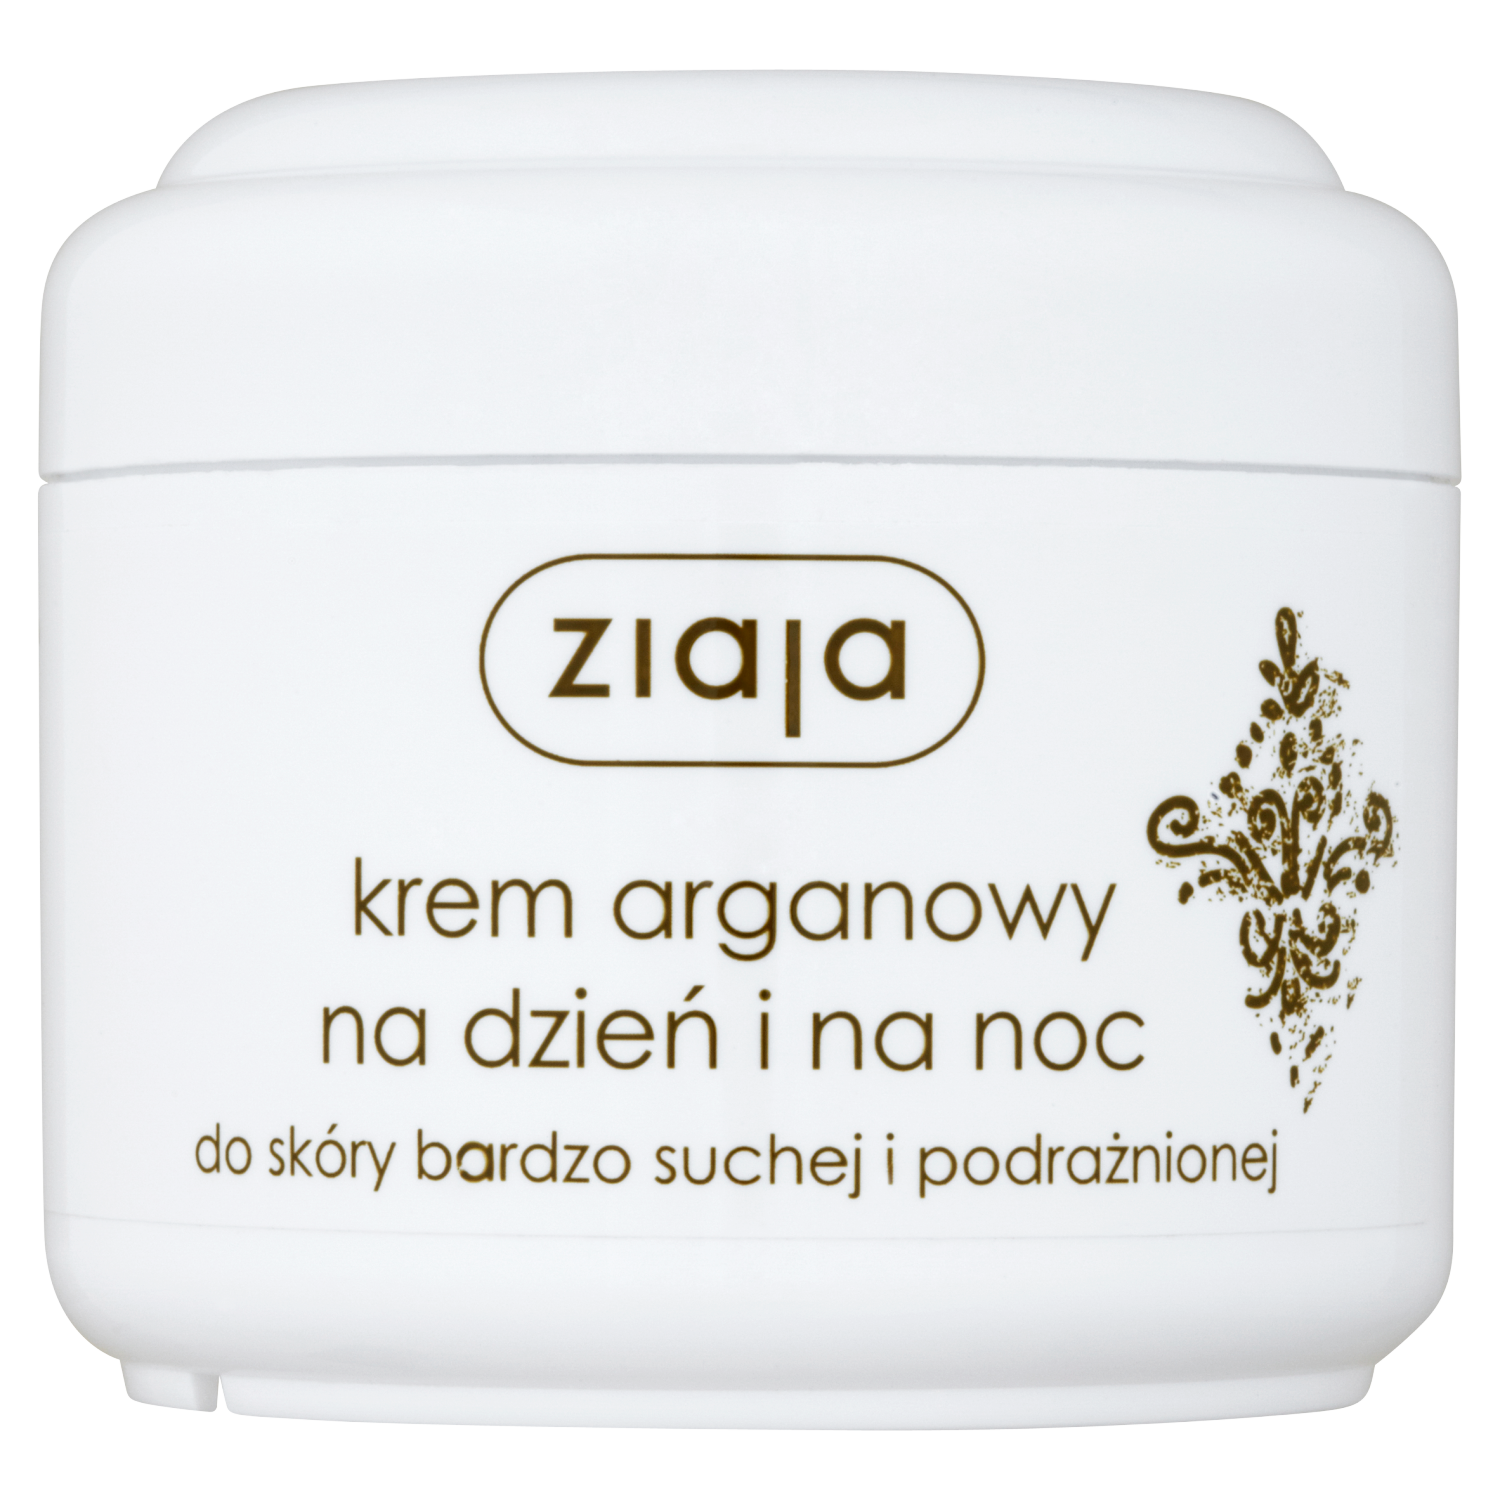 Ziaja успокаивающий и защитный дневной и ночной крем для лица с аргановым маслом для очень сухой и раздраженной кожи, 75 мл